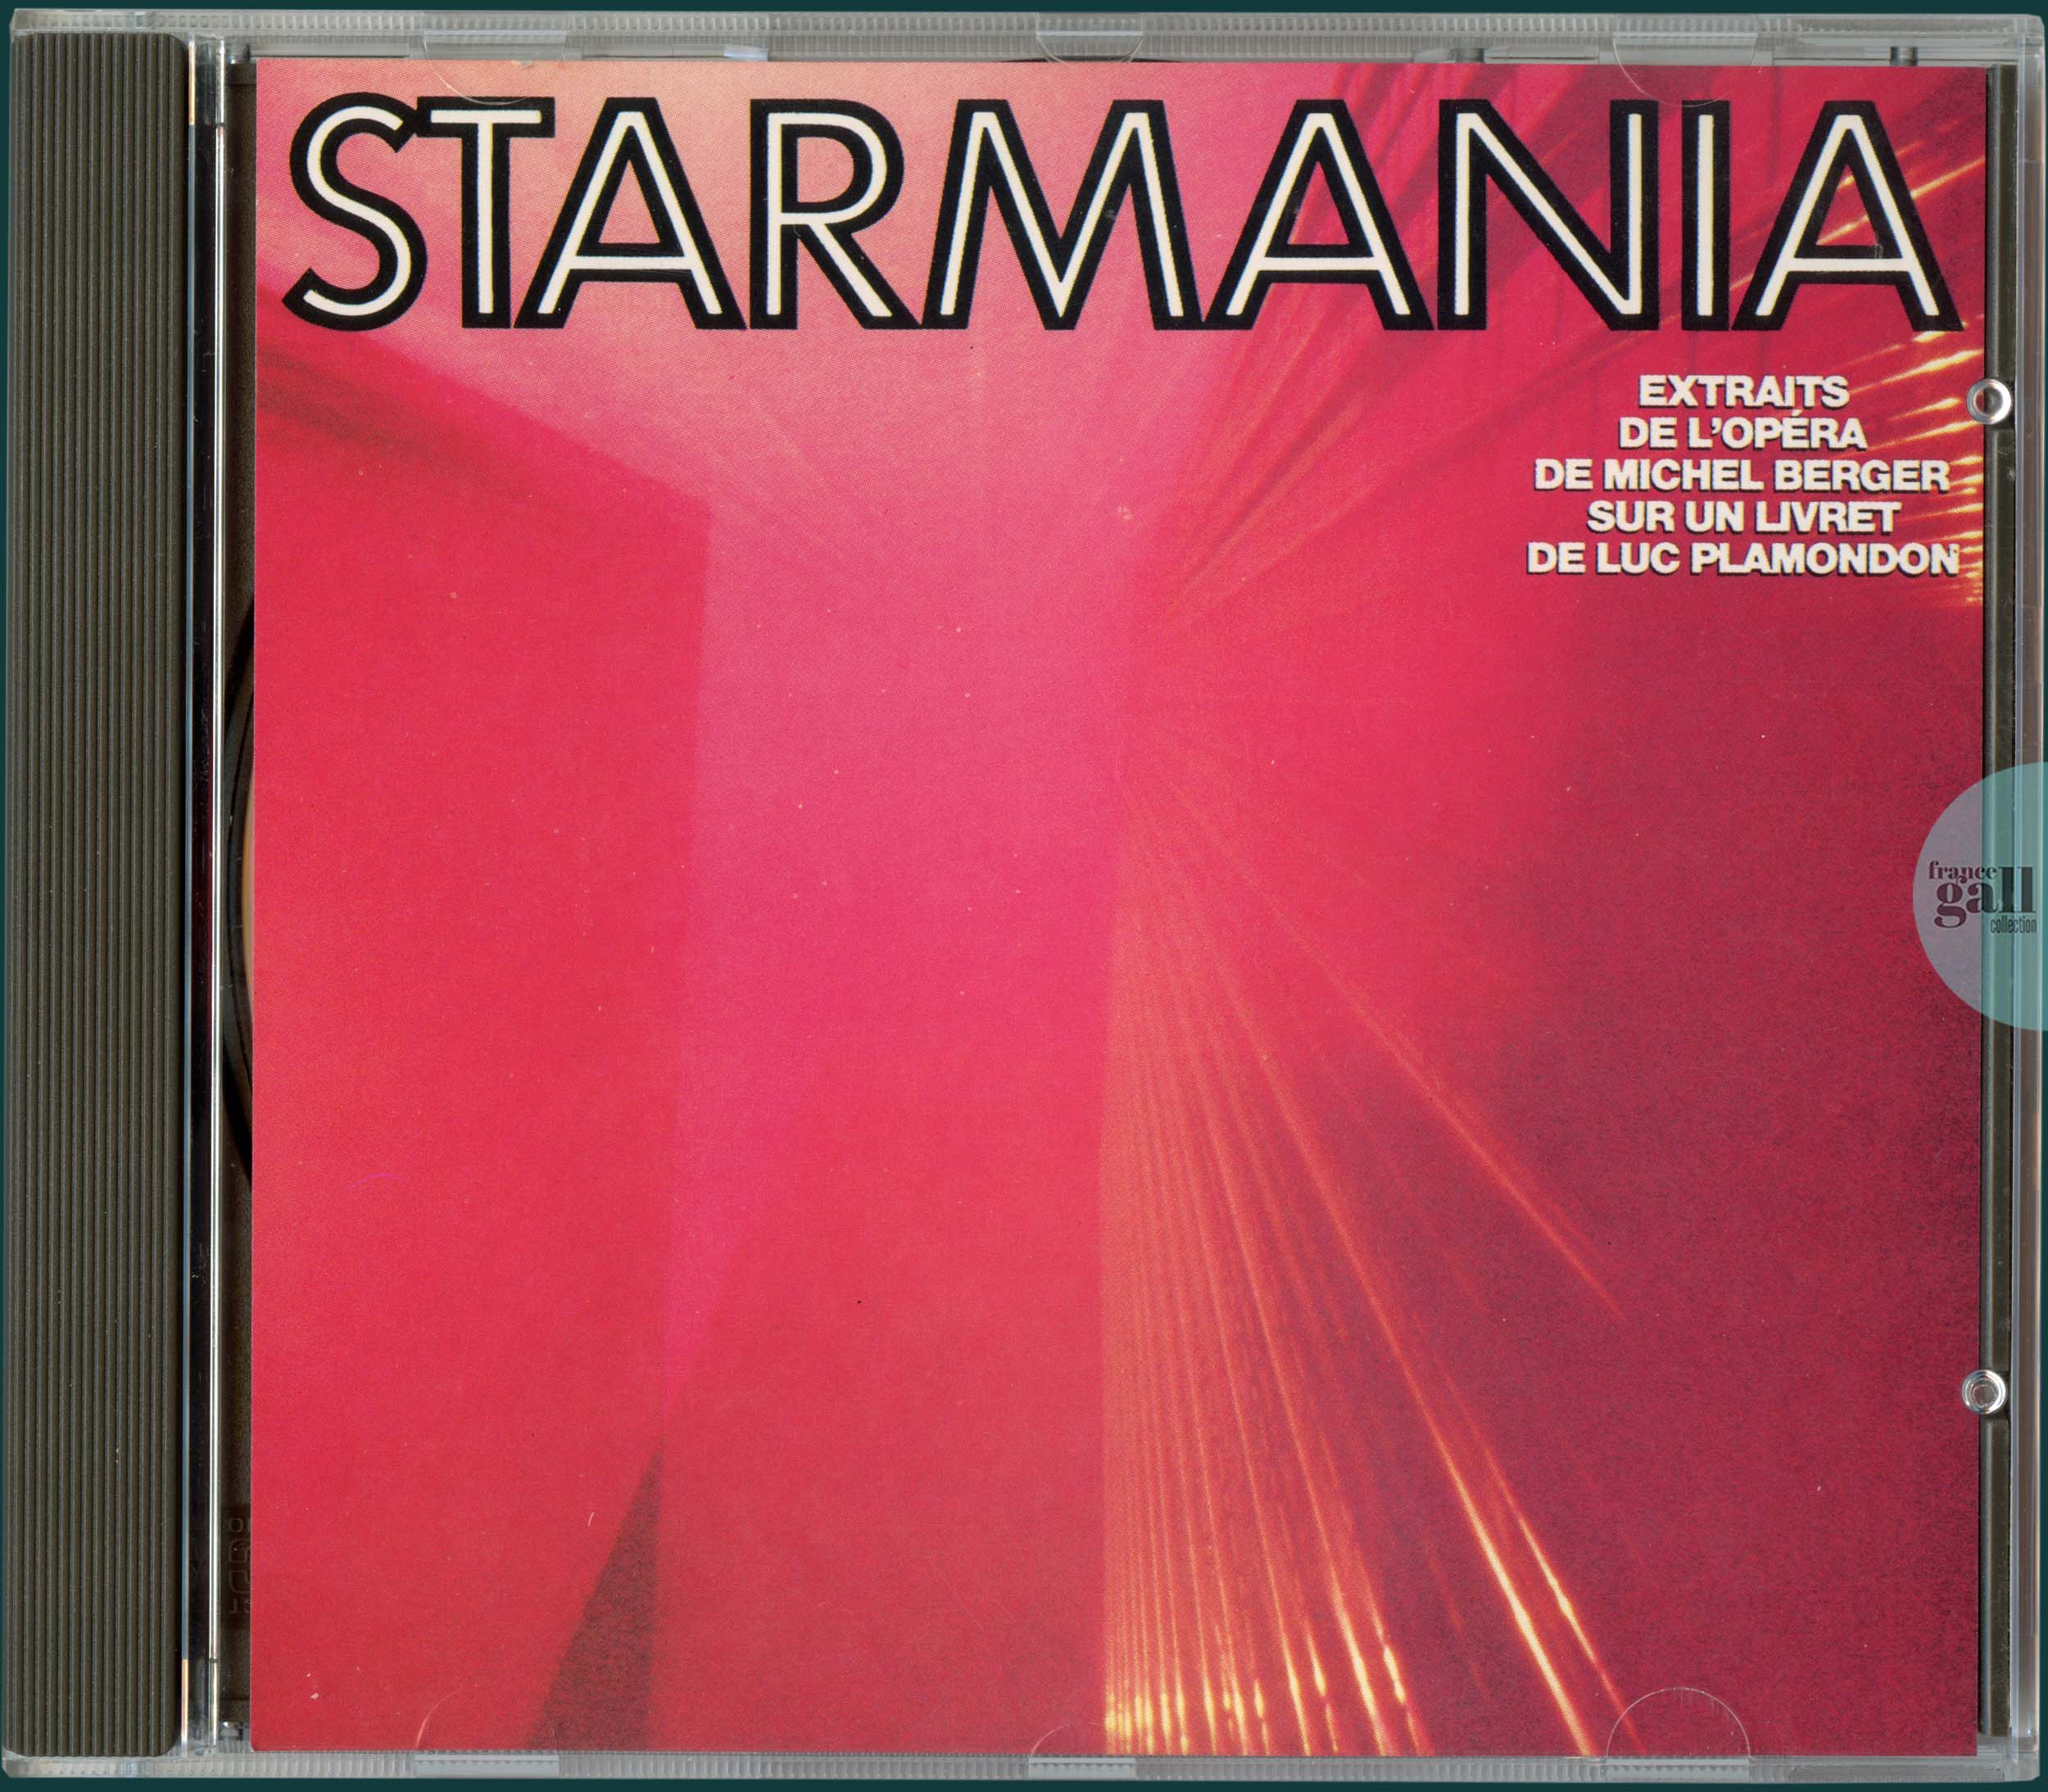 France Gall - Starmania - 1984 (édition 1984)